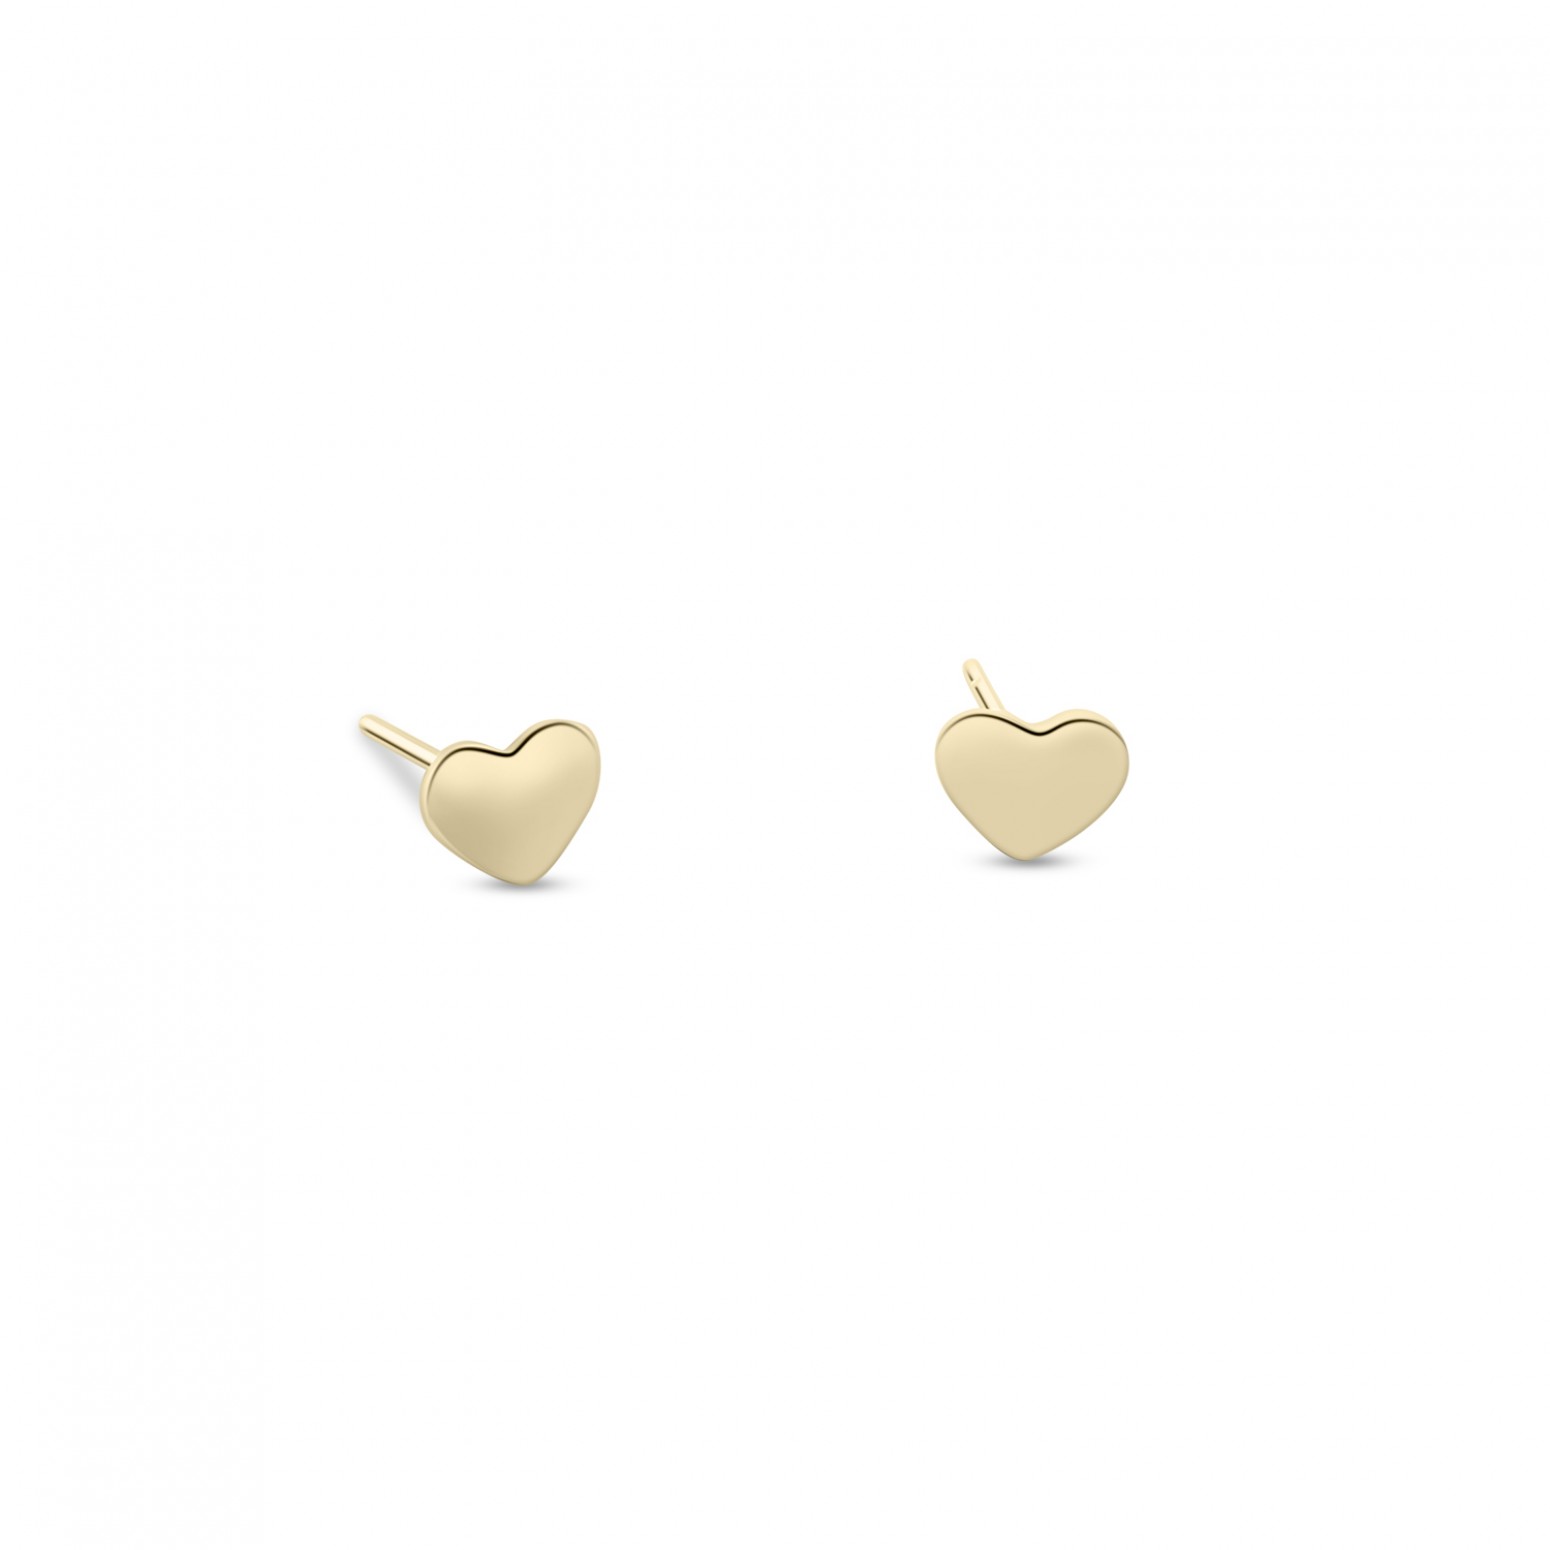 Heart earrings K9 gold, sk4123 EARRINGS Κοσμηματα - chrilia.gr